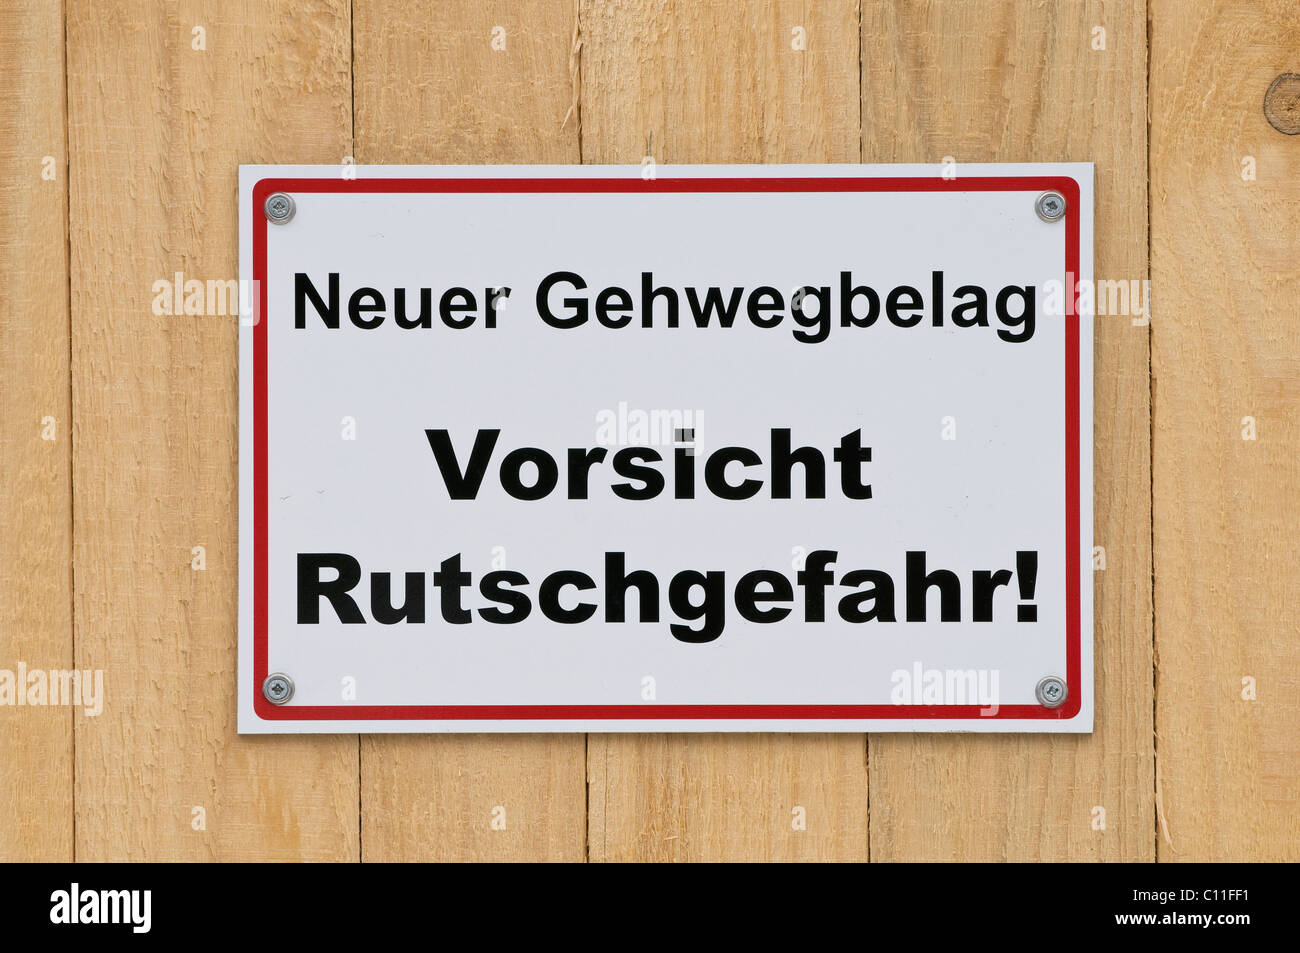 Segno sulla tavola di legno recinzione, Neuer Gehwegbelag Vorsicht Rutschgefahr, nuova passerella superficie, Attenzione pericolo di scivolamento! Foto Stock